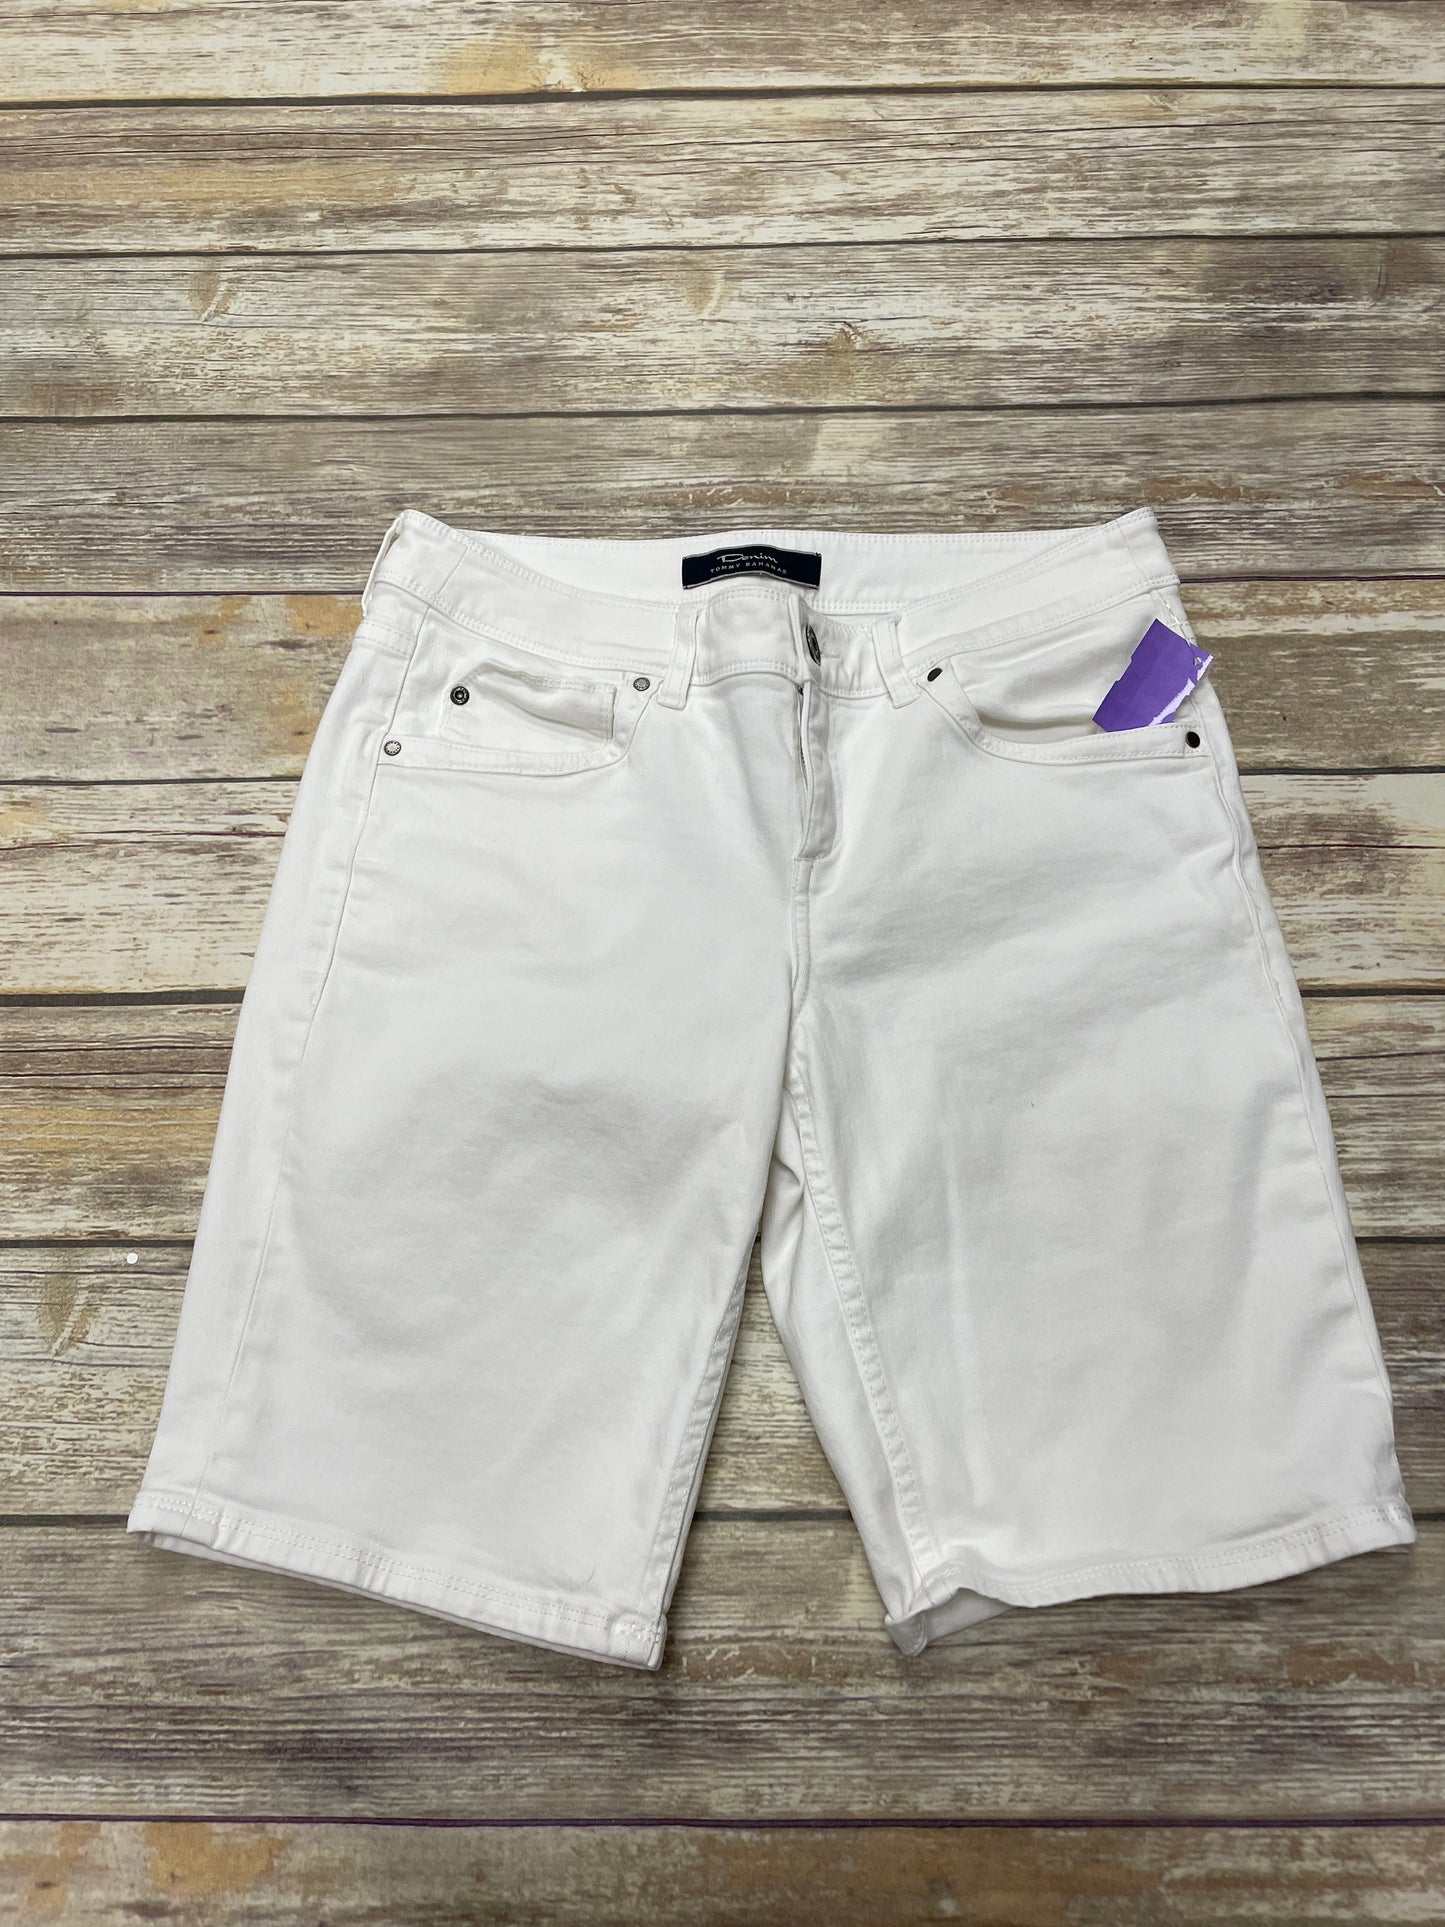 White Shorts Tommy Bahama, Size 10